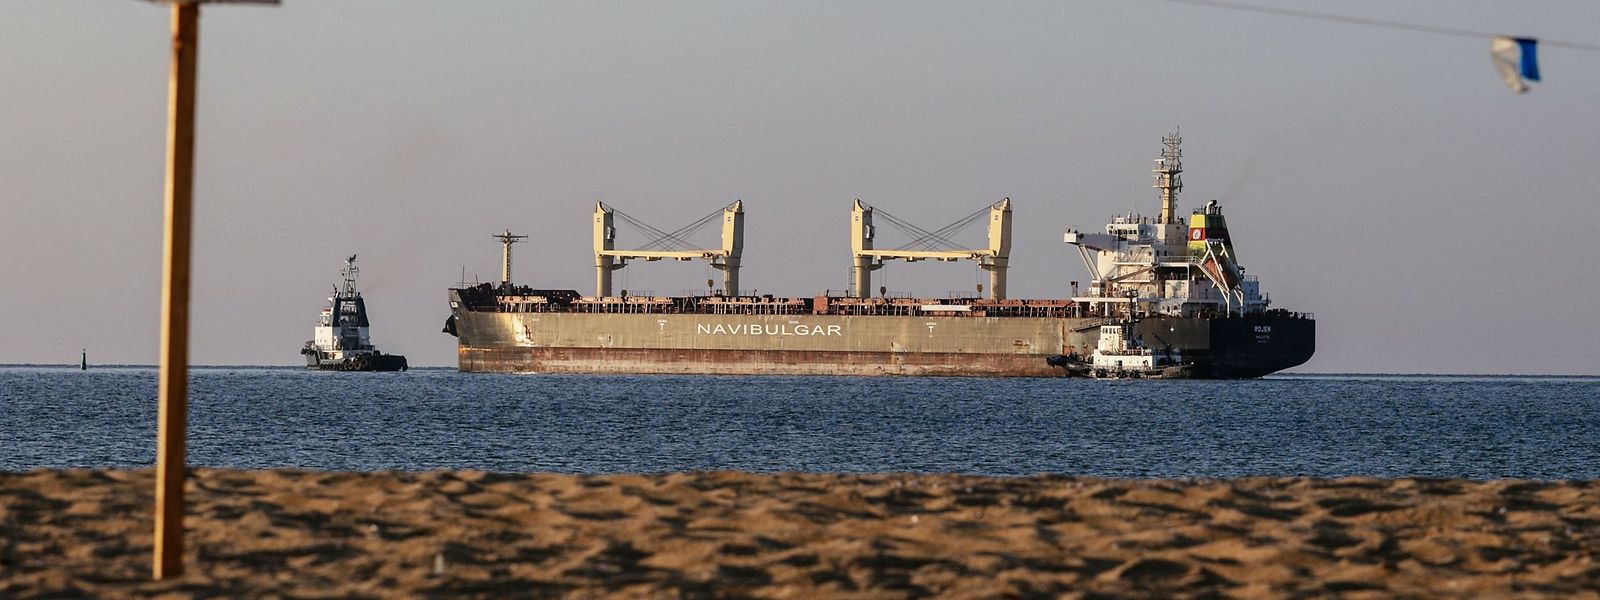 O navio graneleiro M/V Rojen, com toneladas de milho, deixou o porto ucraniano de Chornomorsk em direção a Teesport, no Reino Unido, esta sexta-feira